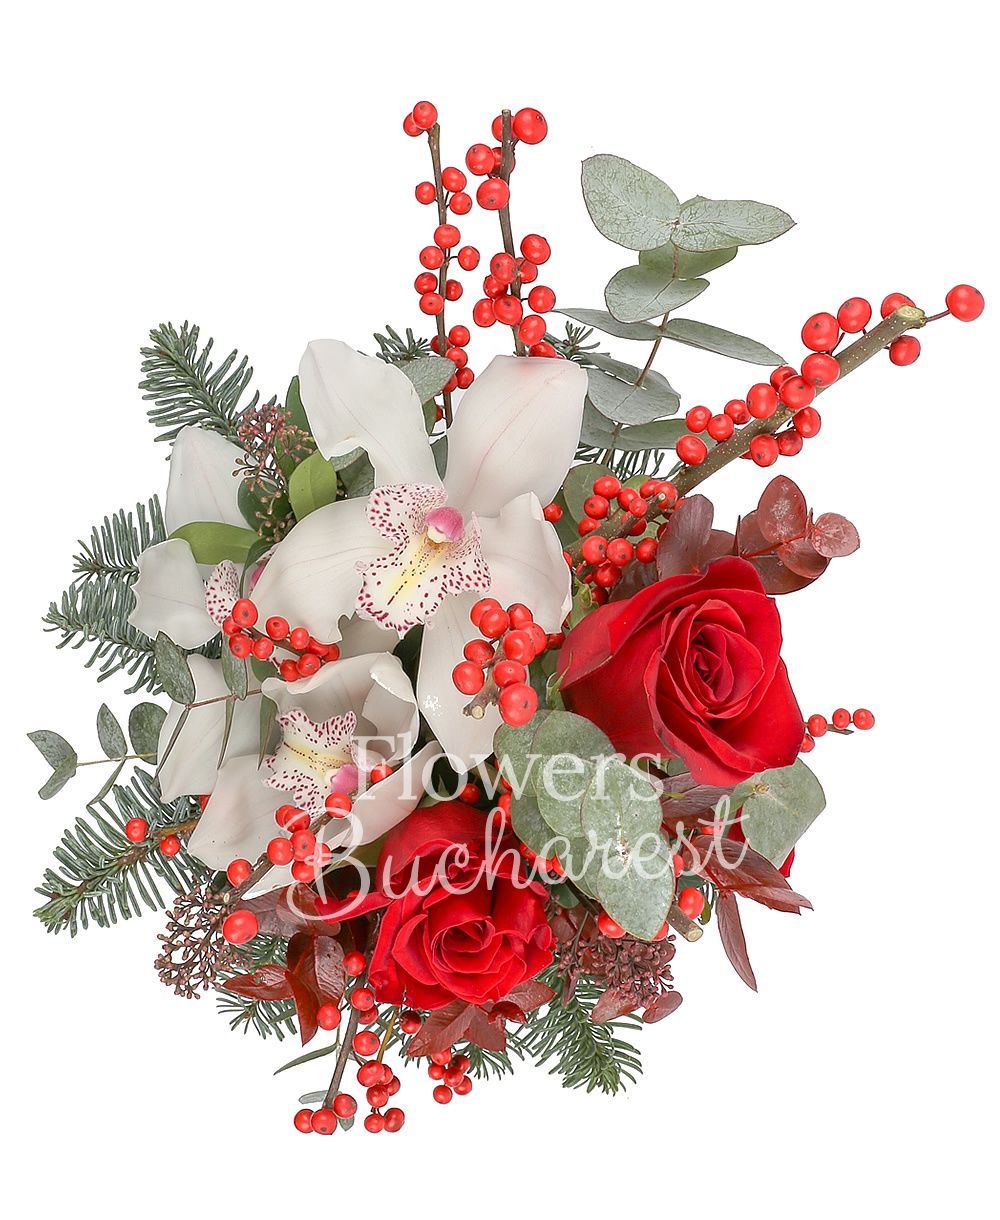 3 red roses, 1 white cymbidium, ilex, greenery